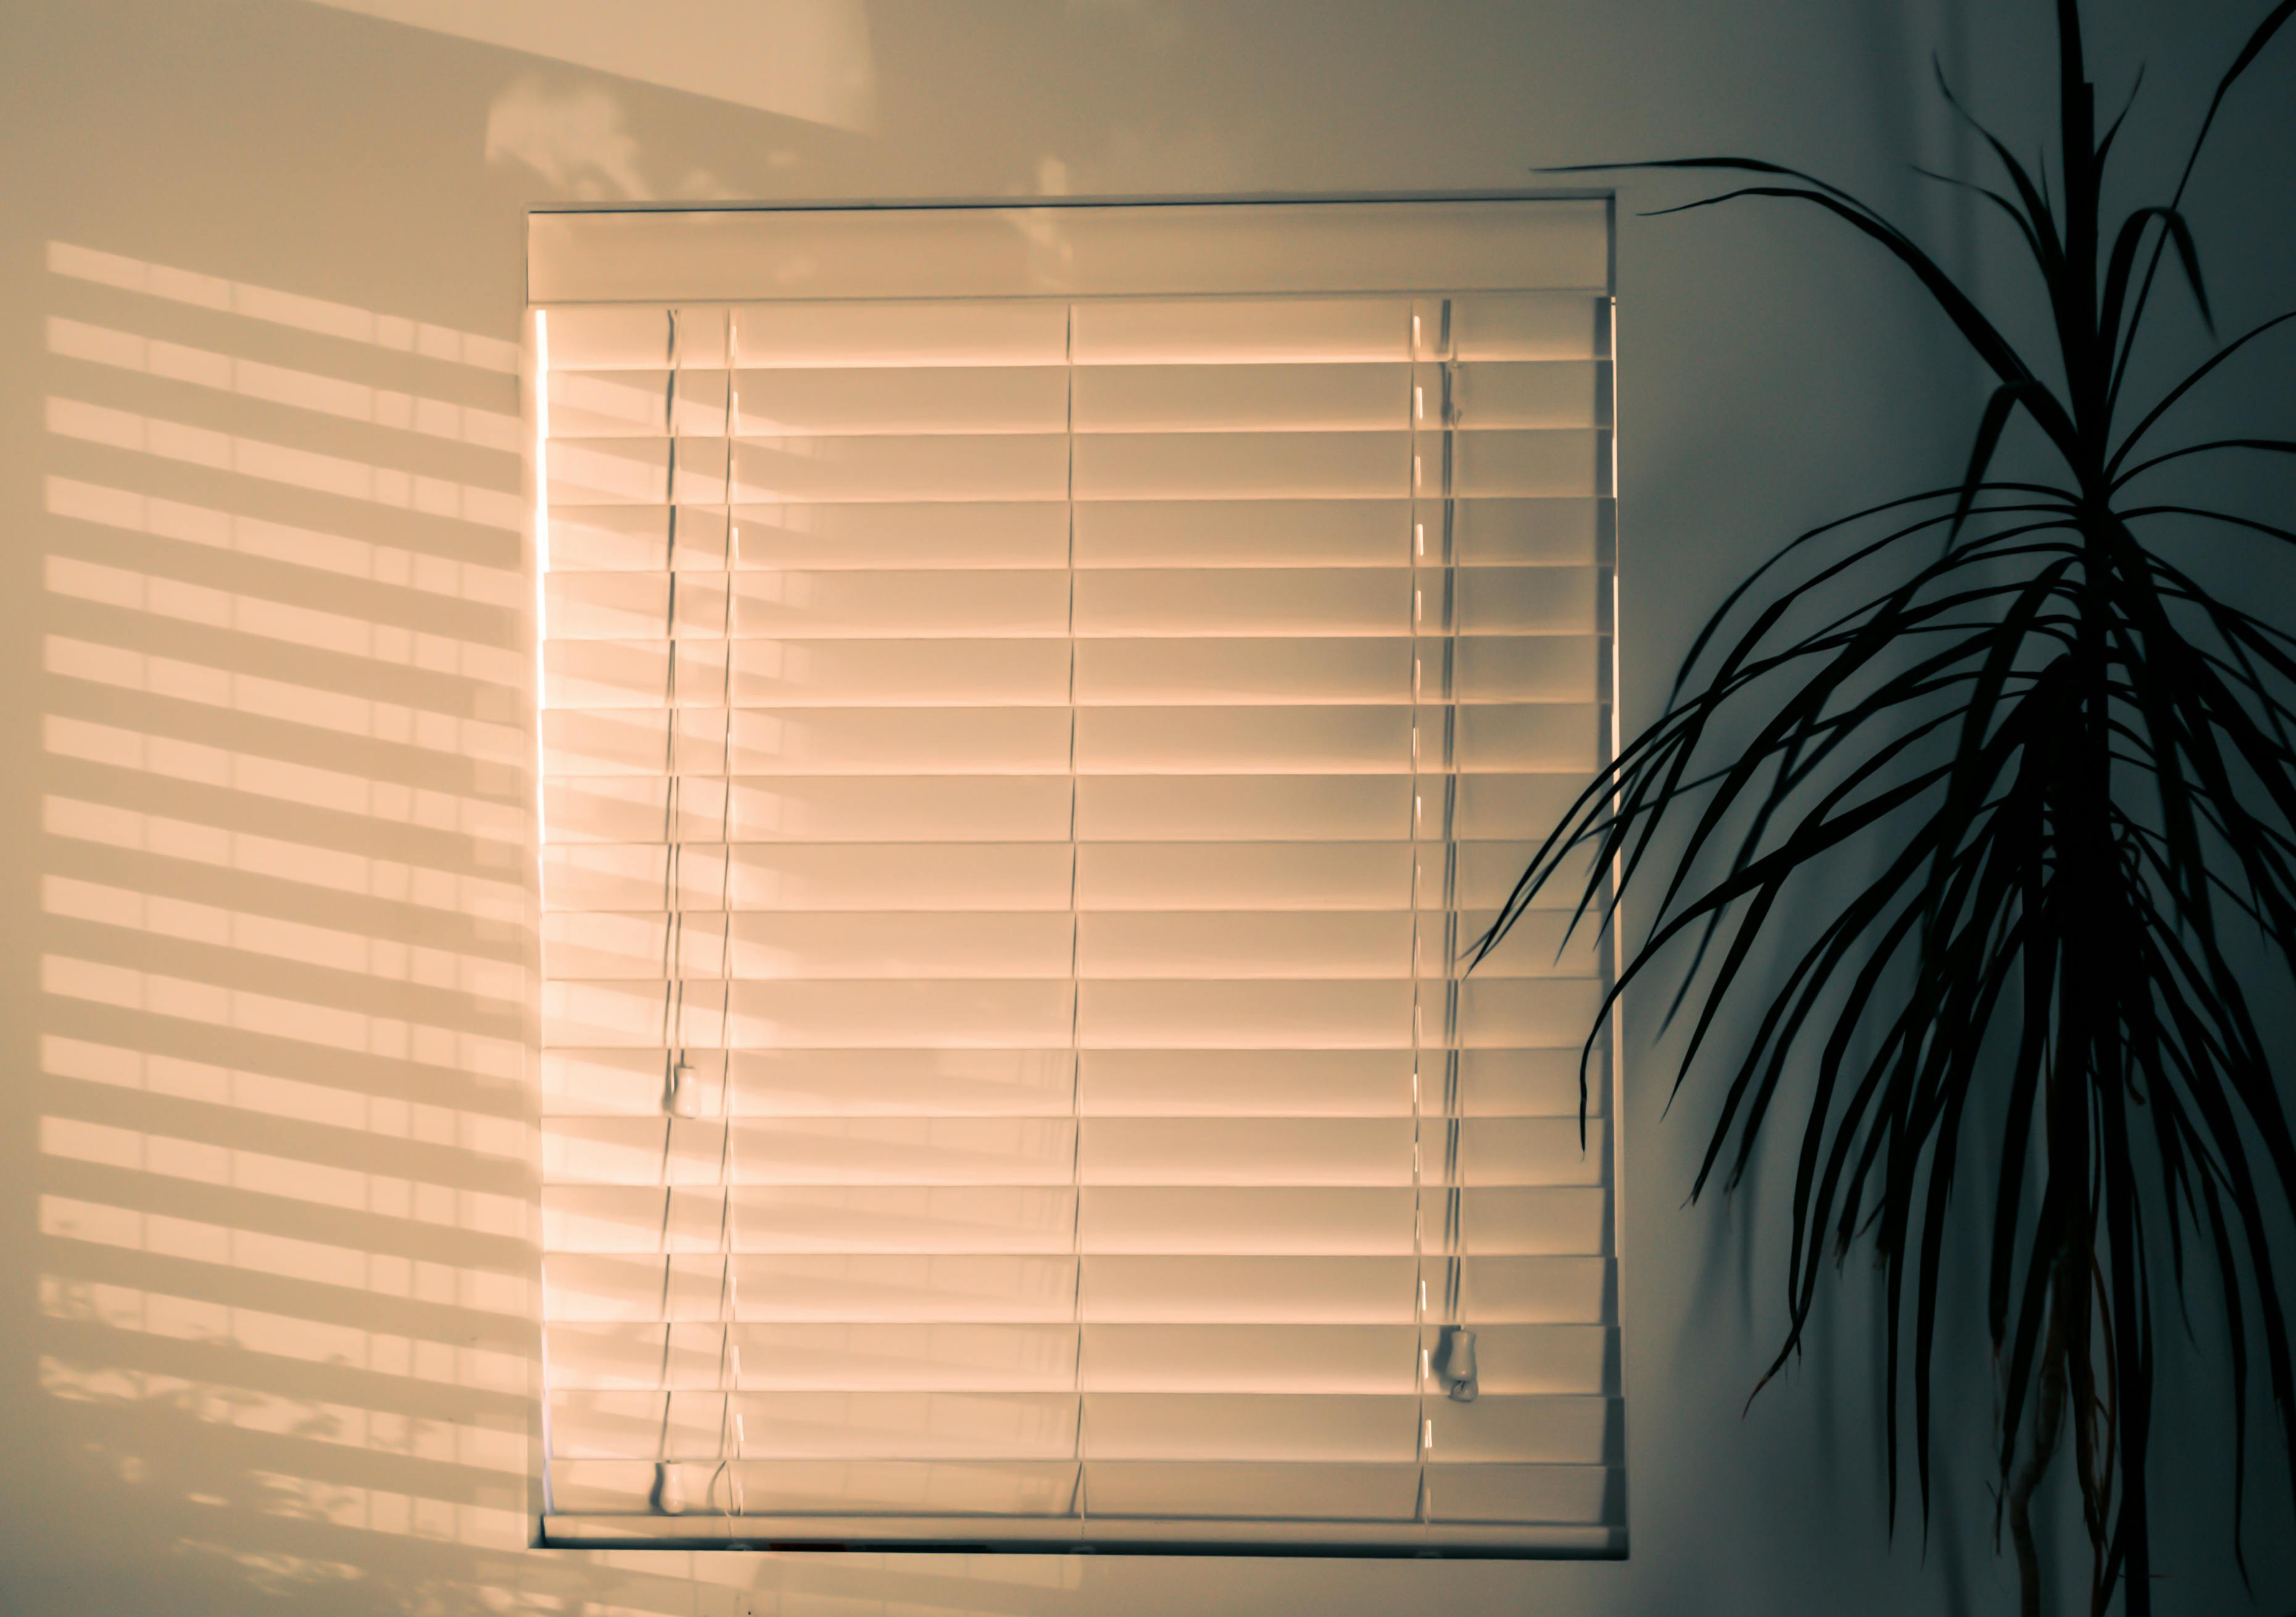 Blinder stock photo. Image of window, eyeshade, indoors - 34723200